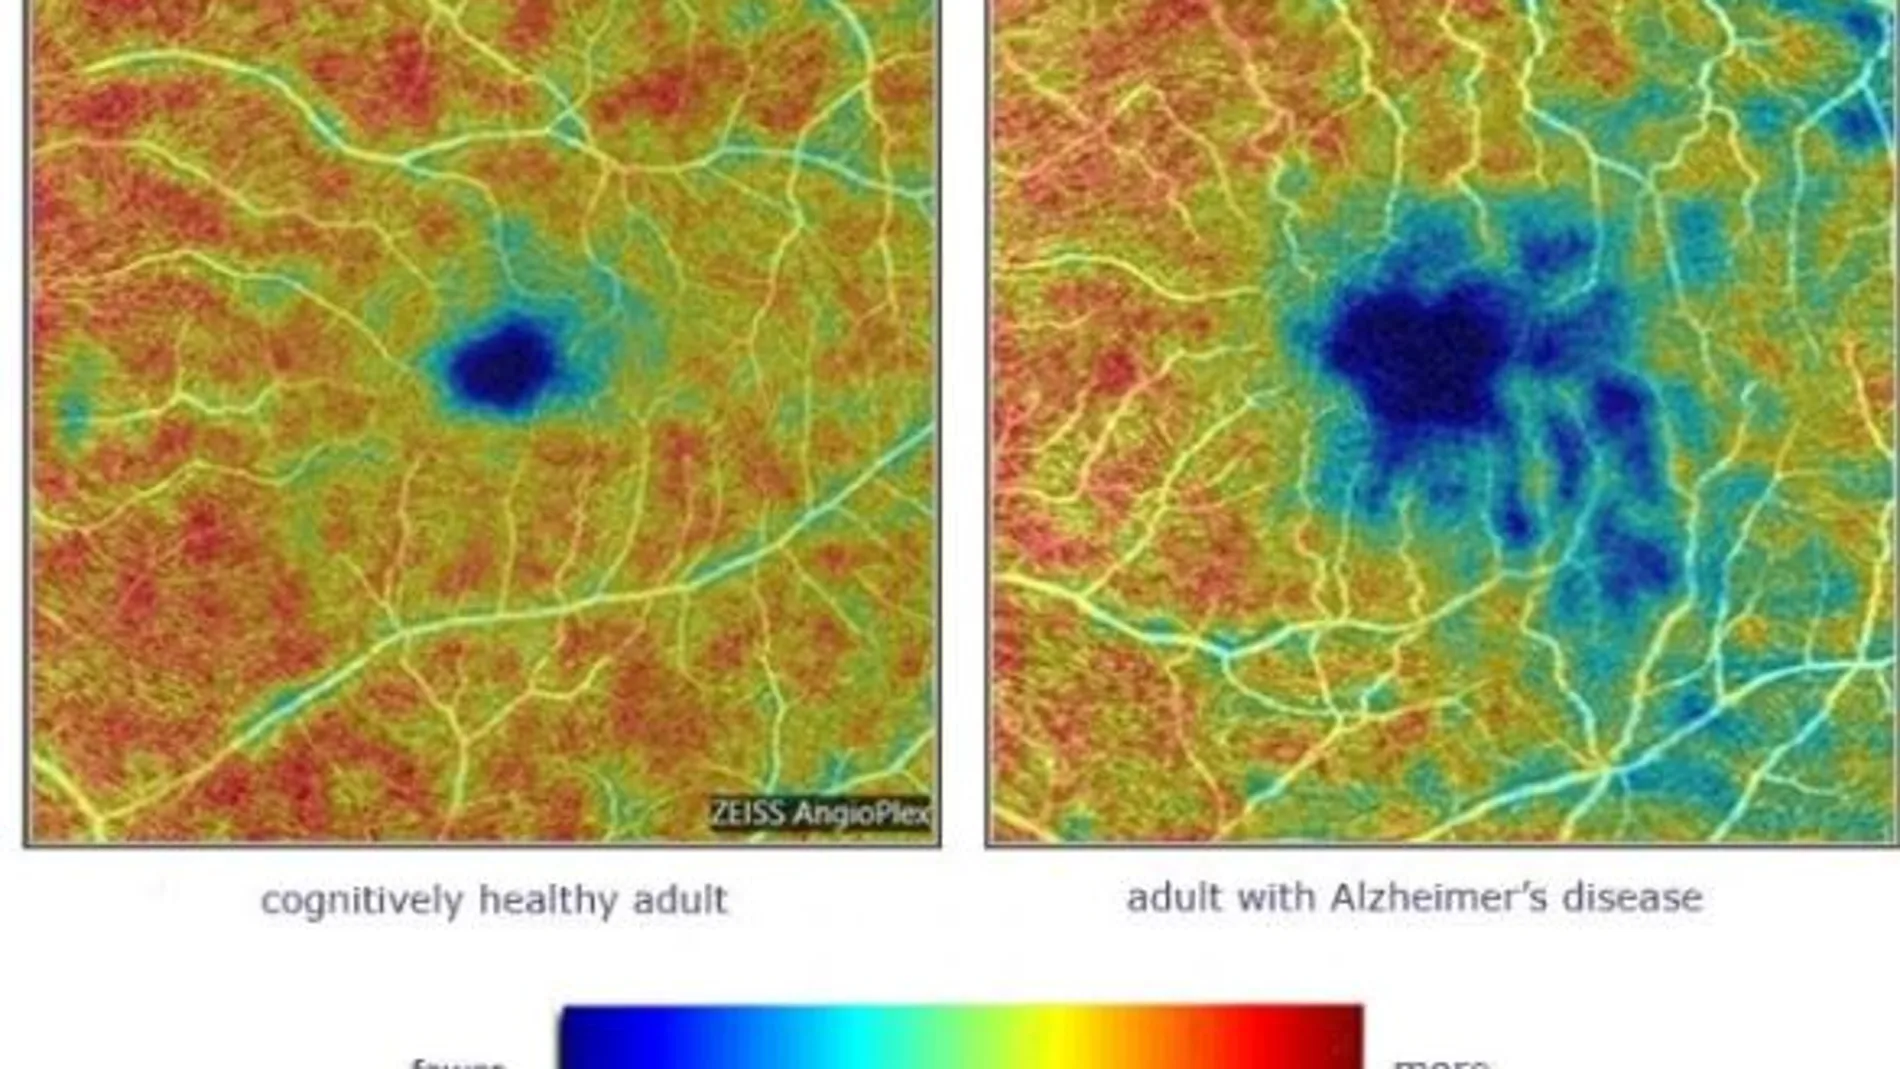 A la derecha, la retina de una persona con la enfermedad de Alzhéimer. Las áreas en azul y verde muestran donde los vasos sanguíneos son menos densos